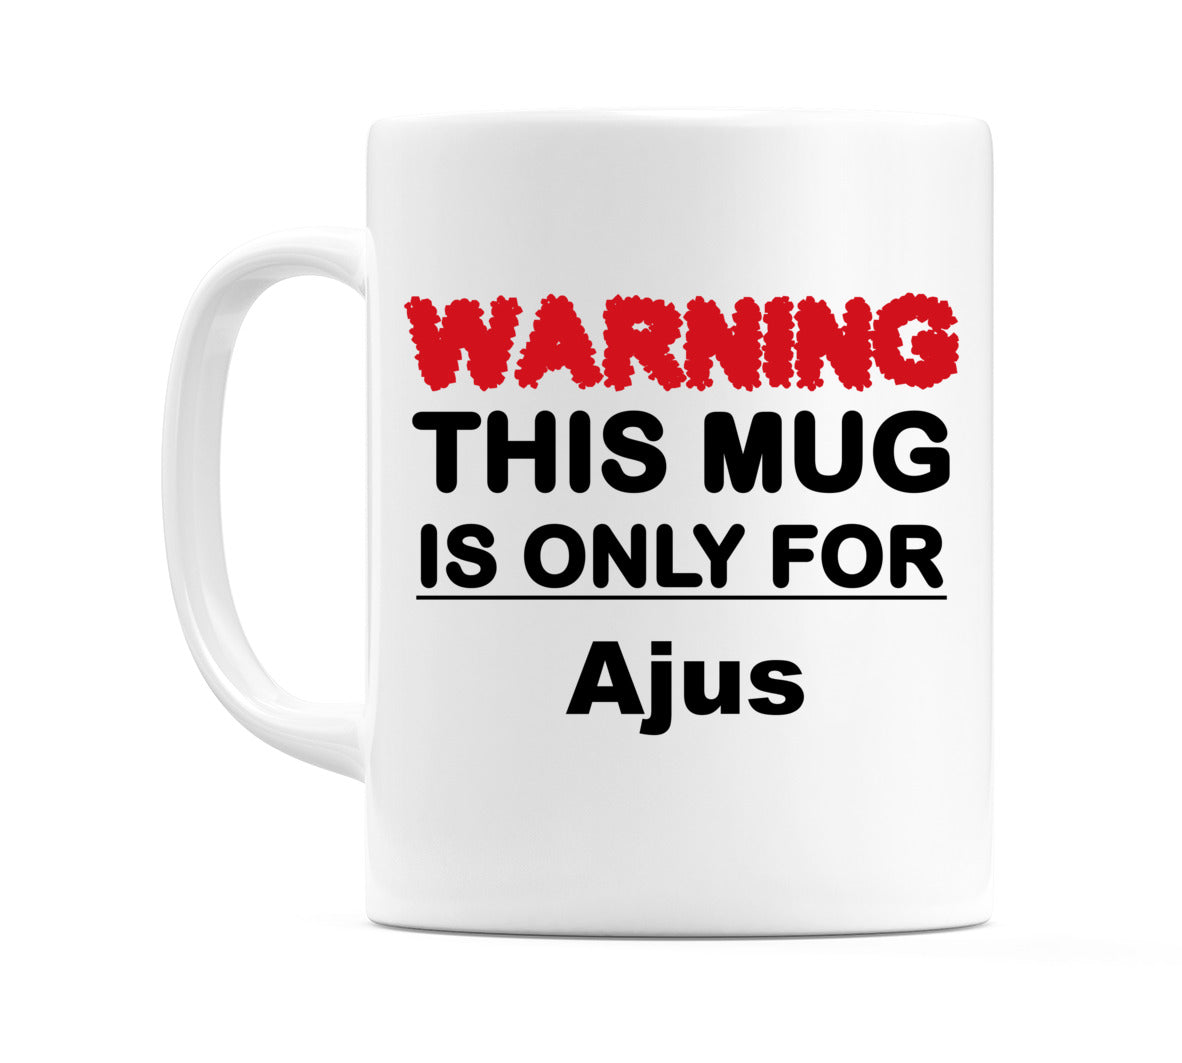 Warning This Mug is ONLY for Ajus Mug